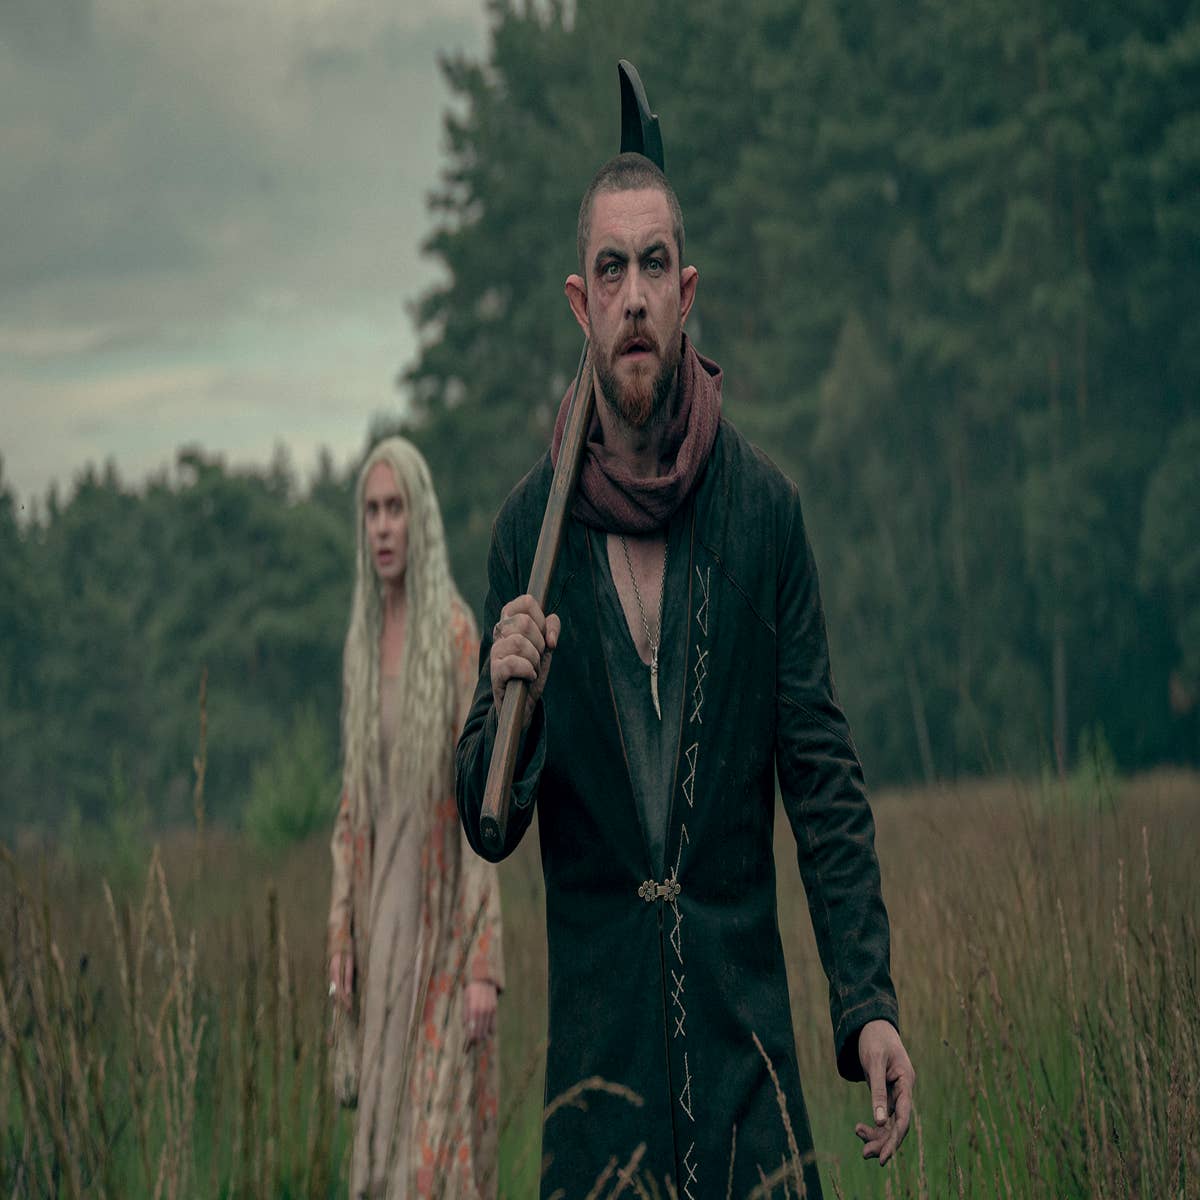 Watch The Witcher: Blood Origin